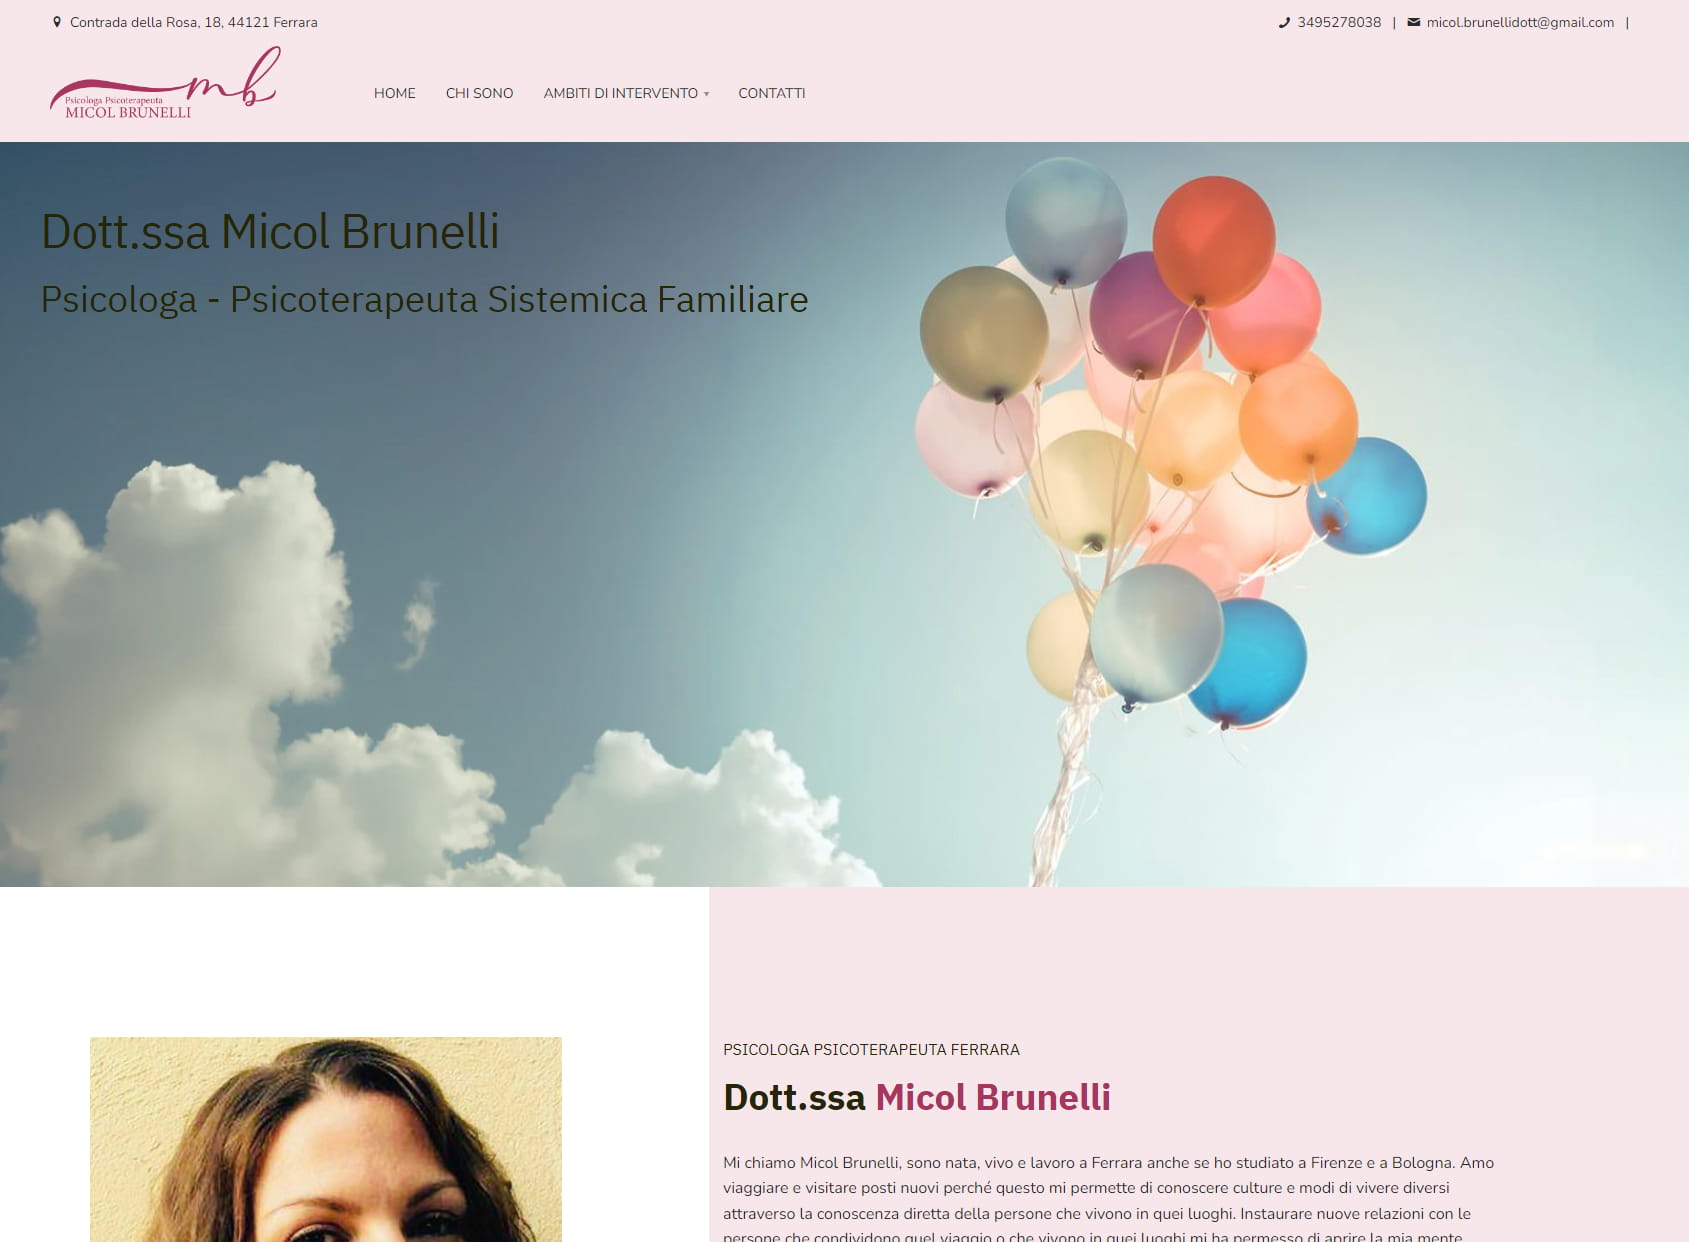 Dott.ssa Micol Brunelli